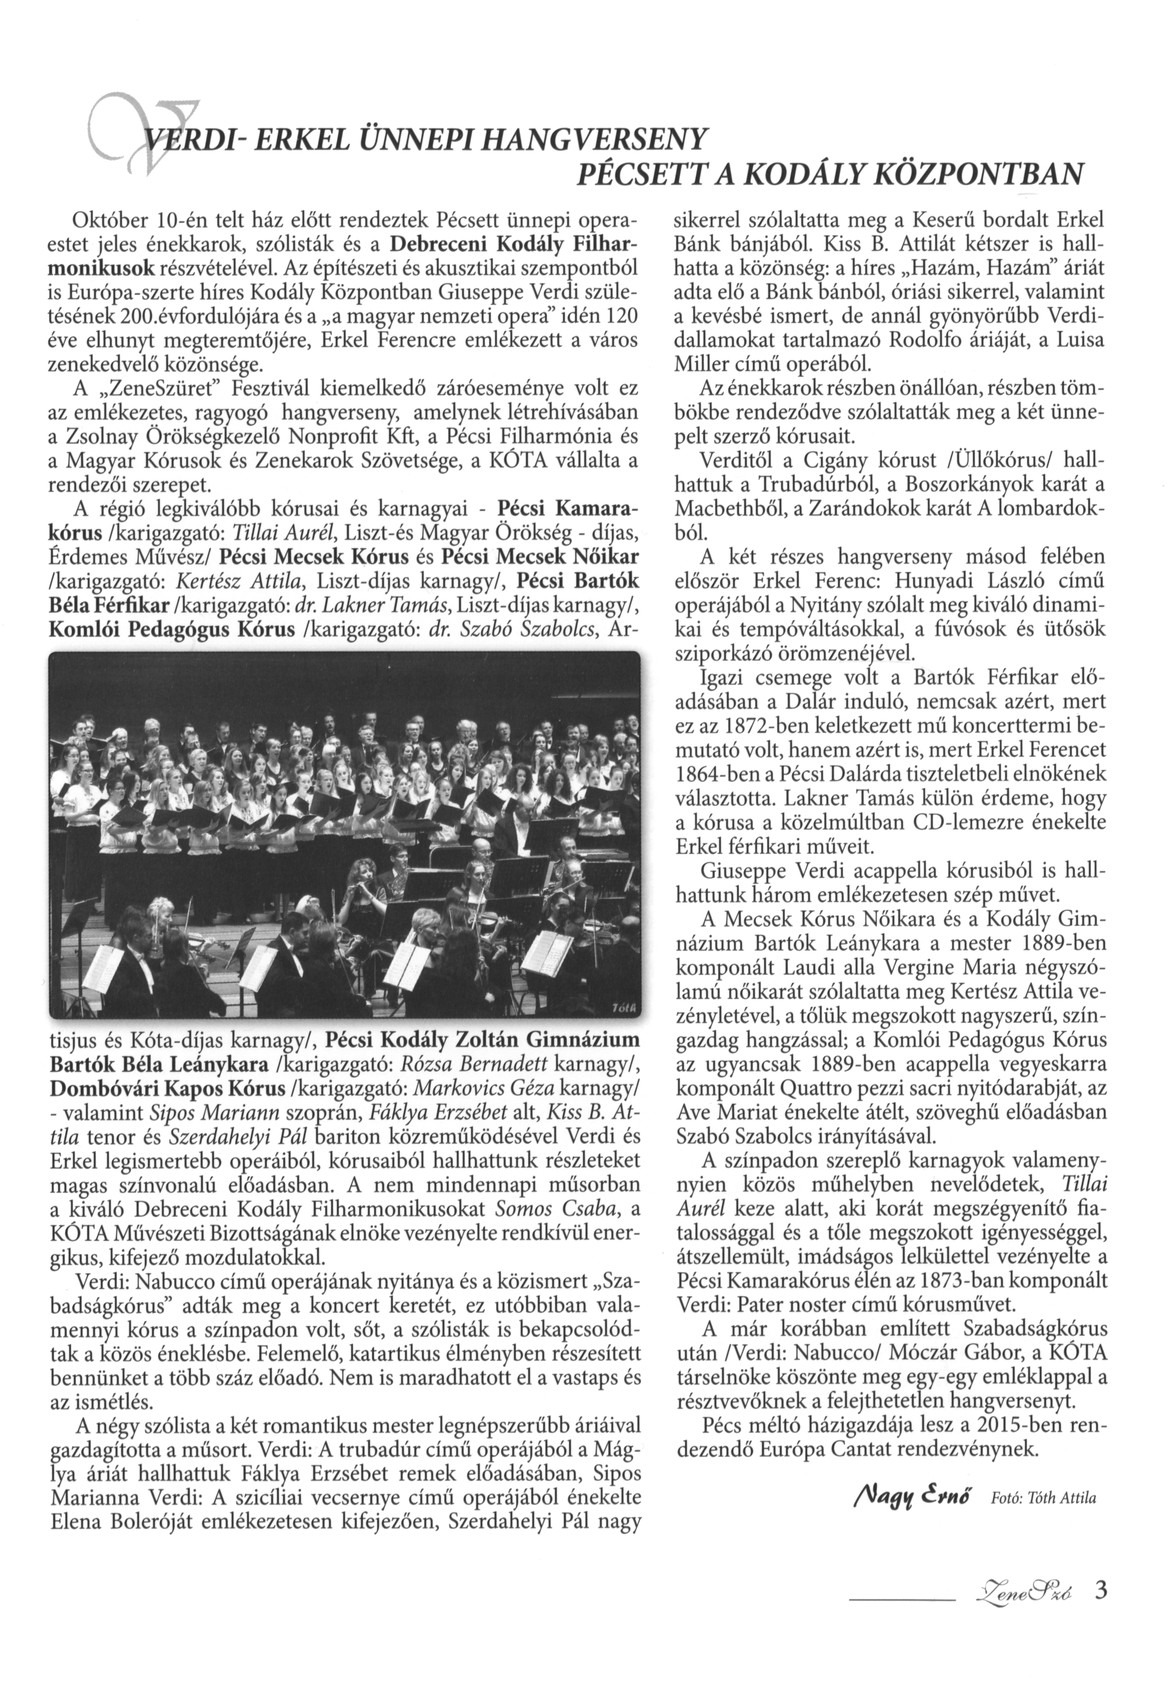 Verdi-Erkel ünnepi hangverseny Pécsett a Kodály Központban